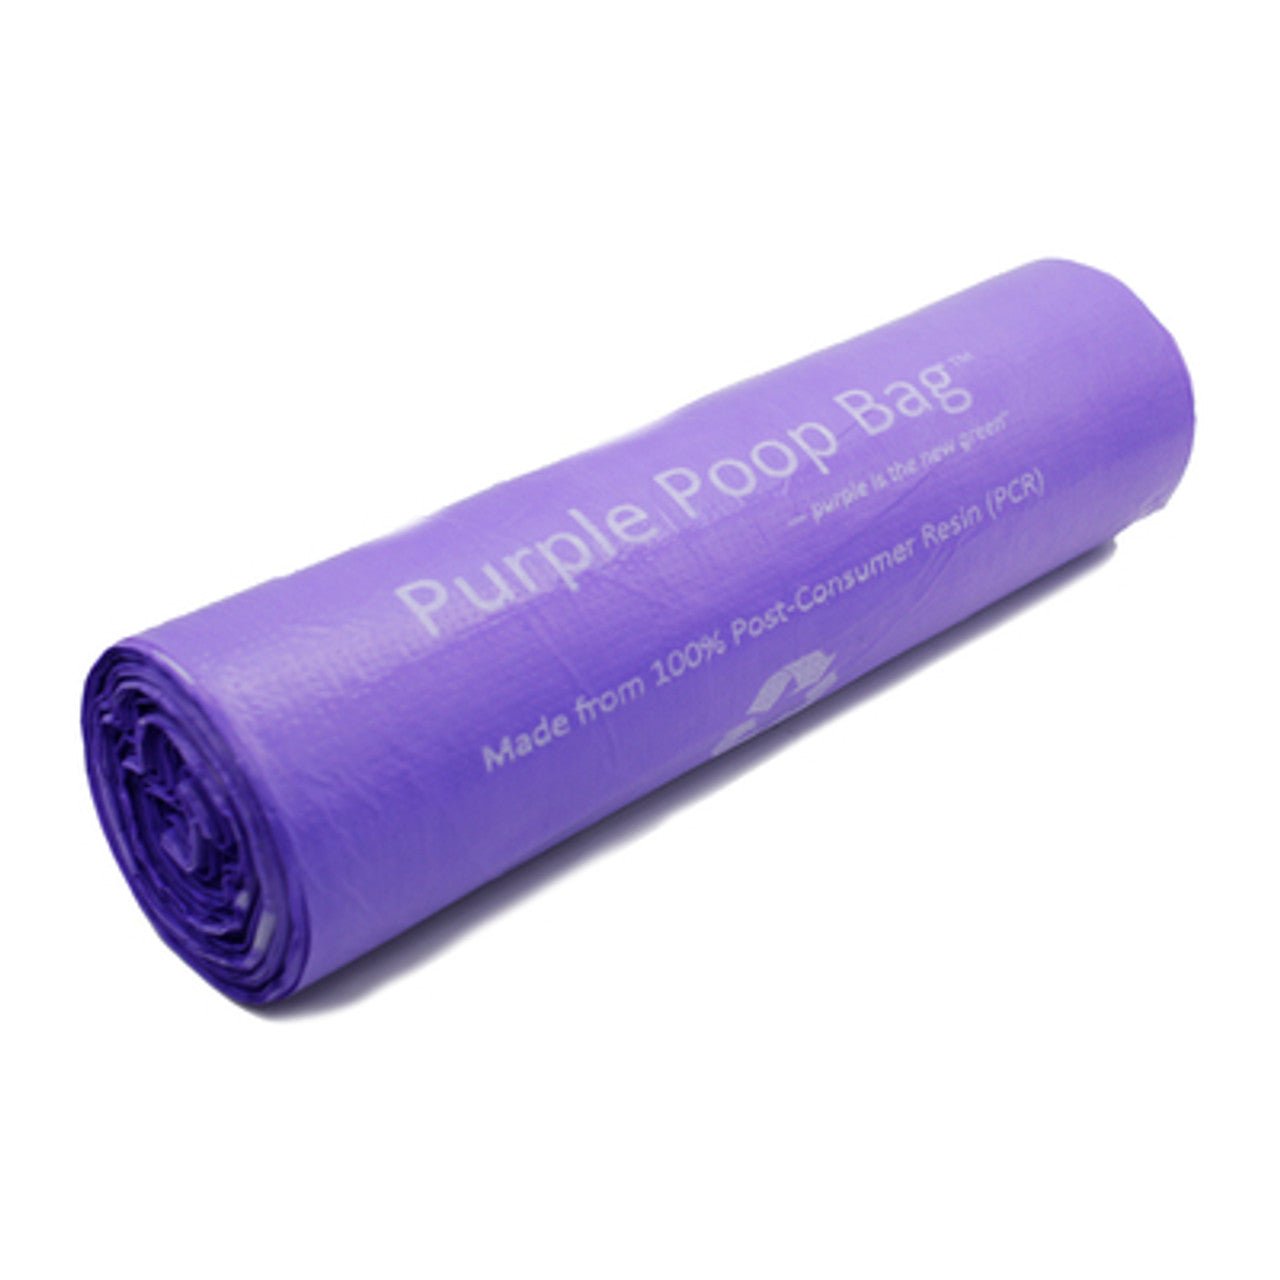 Purple Poop Bag rolled up